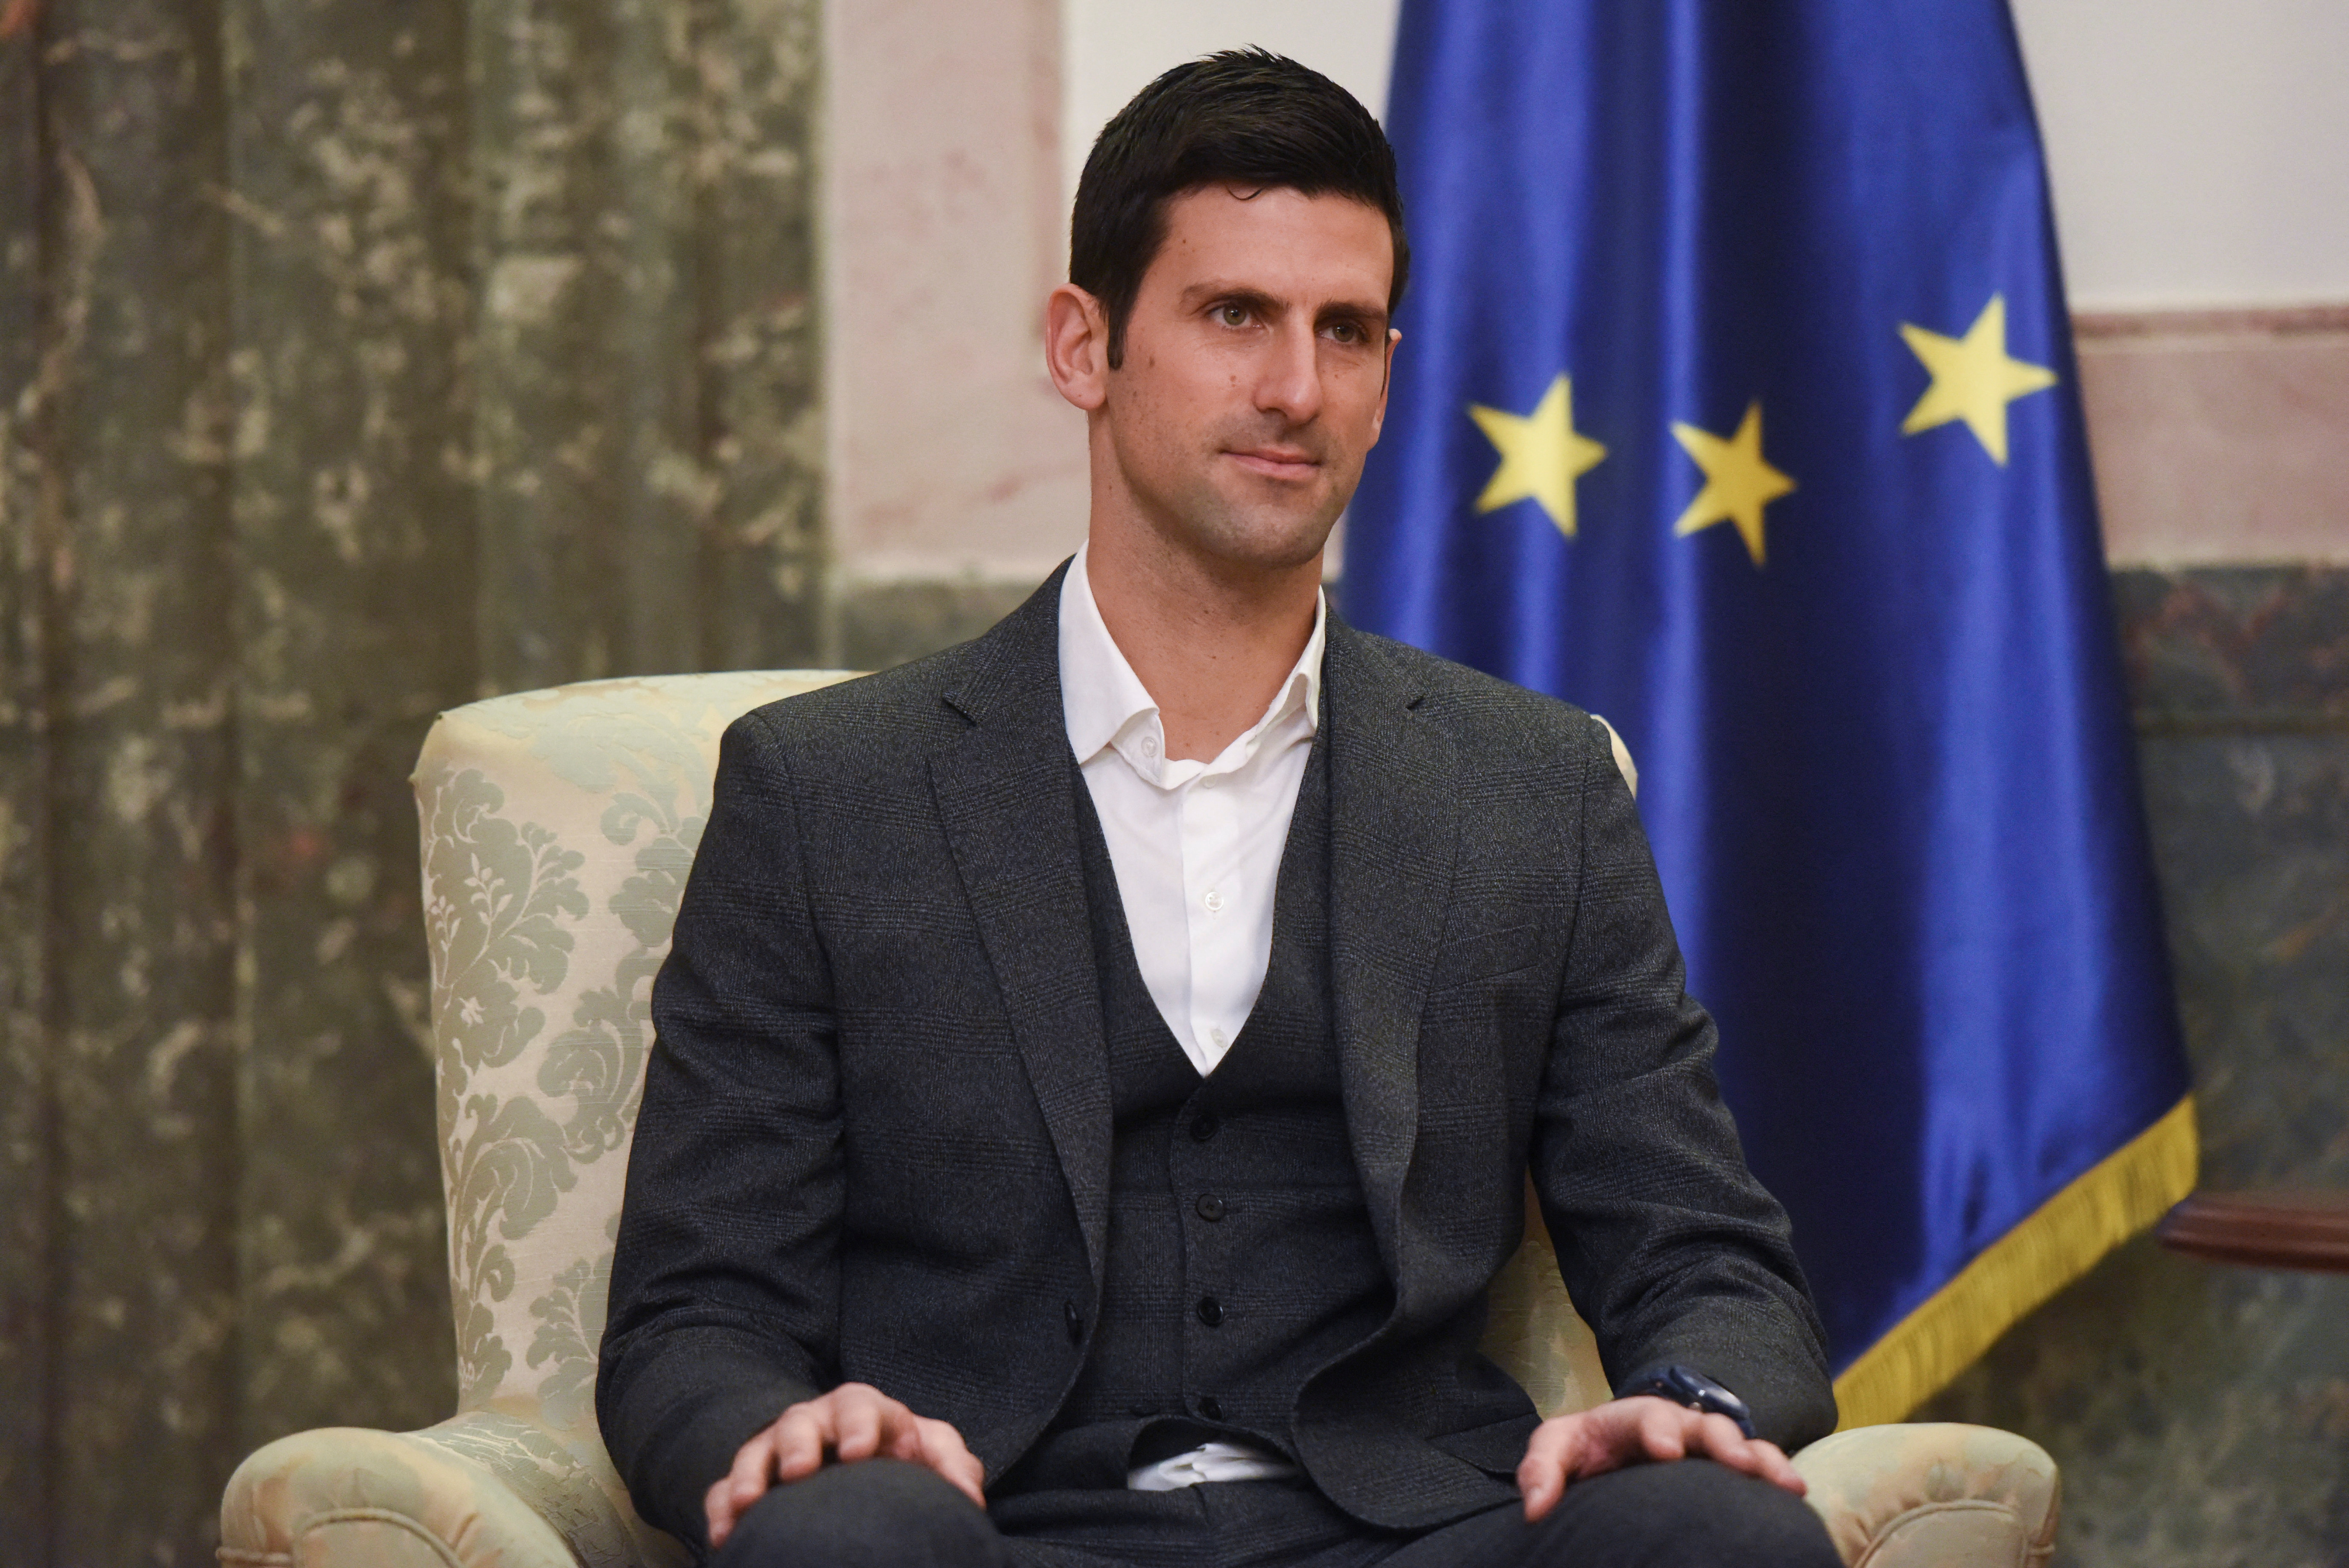 Novak Djokovic habló tras el escándalo en Australia y avisó: “Tengan  paciencia, contaré todo lo que sucedió allí” - Infobae